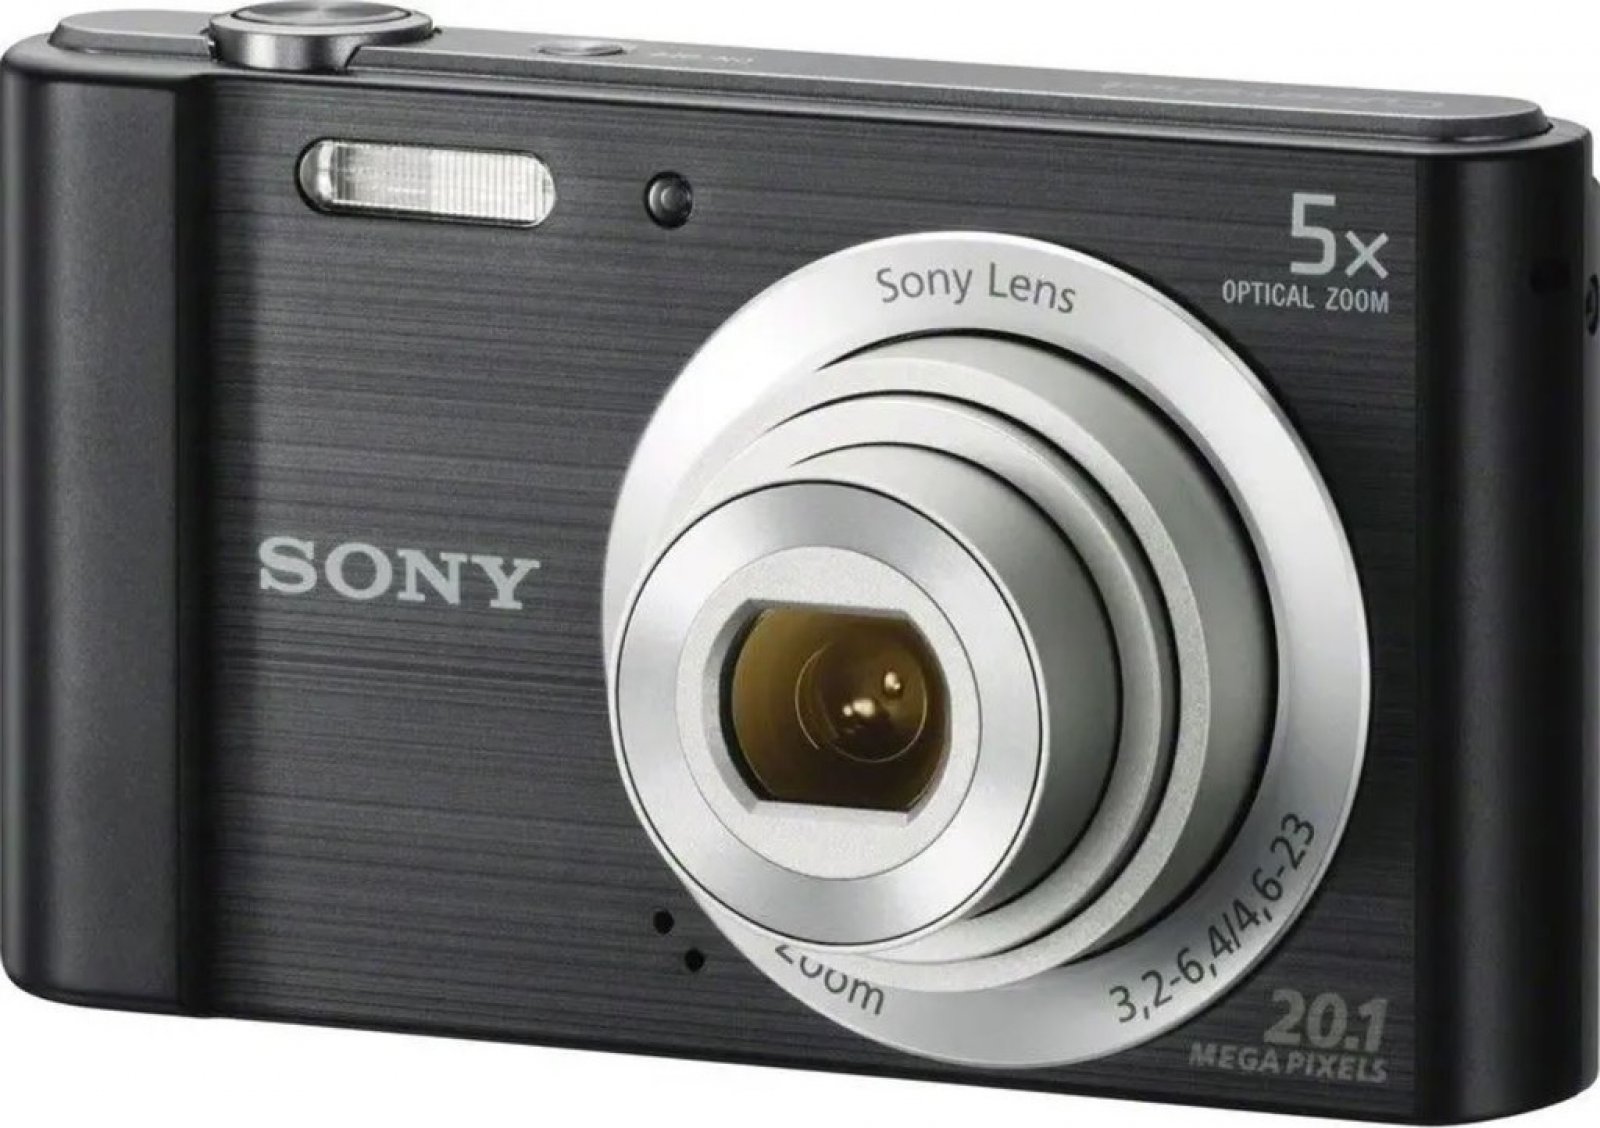 Sonyjev kompaktni digitalni fotoaparat.